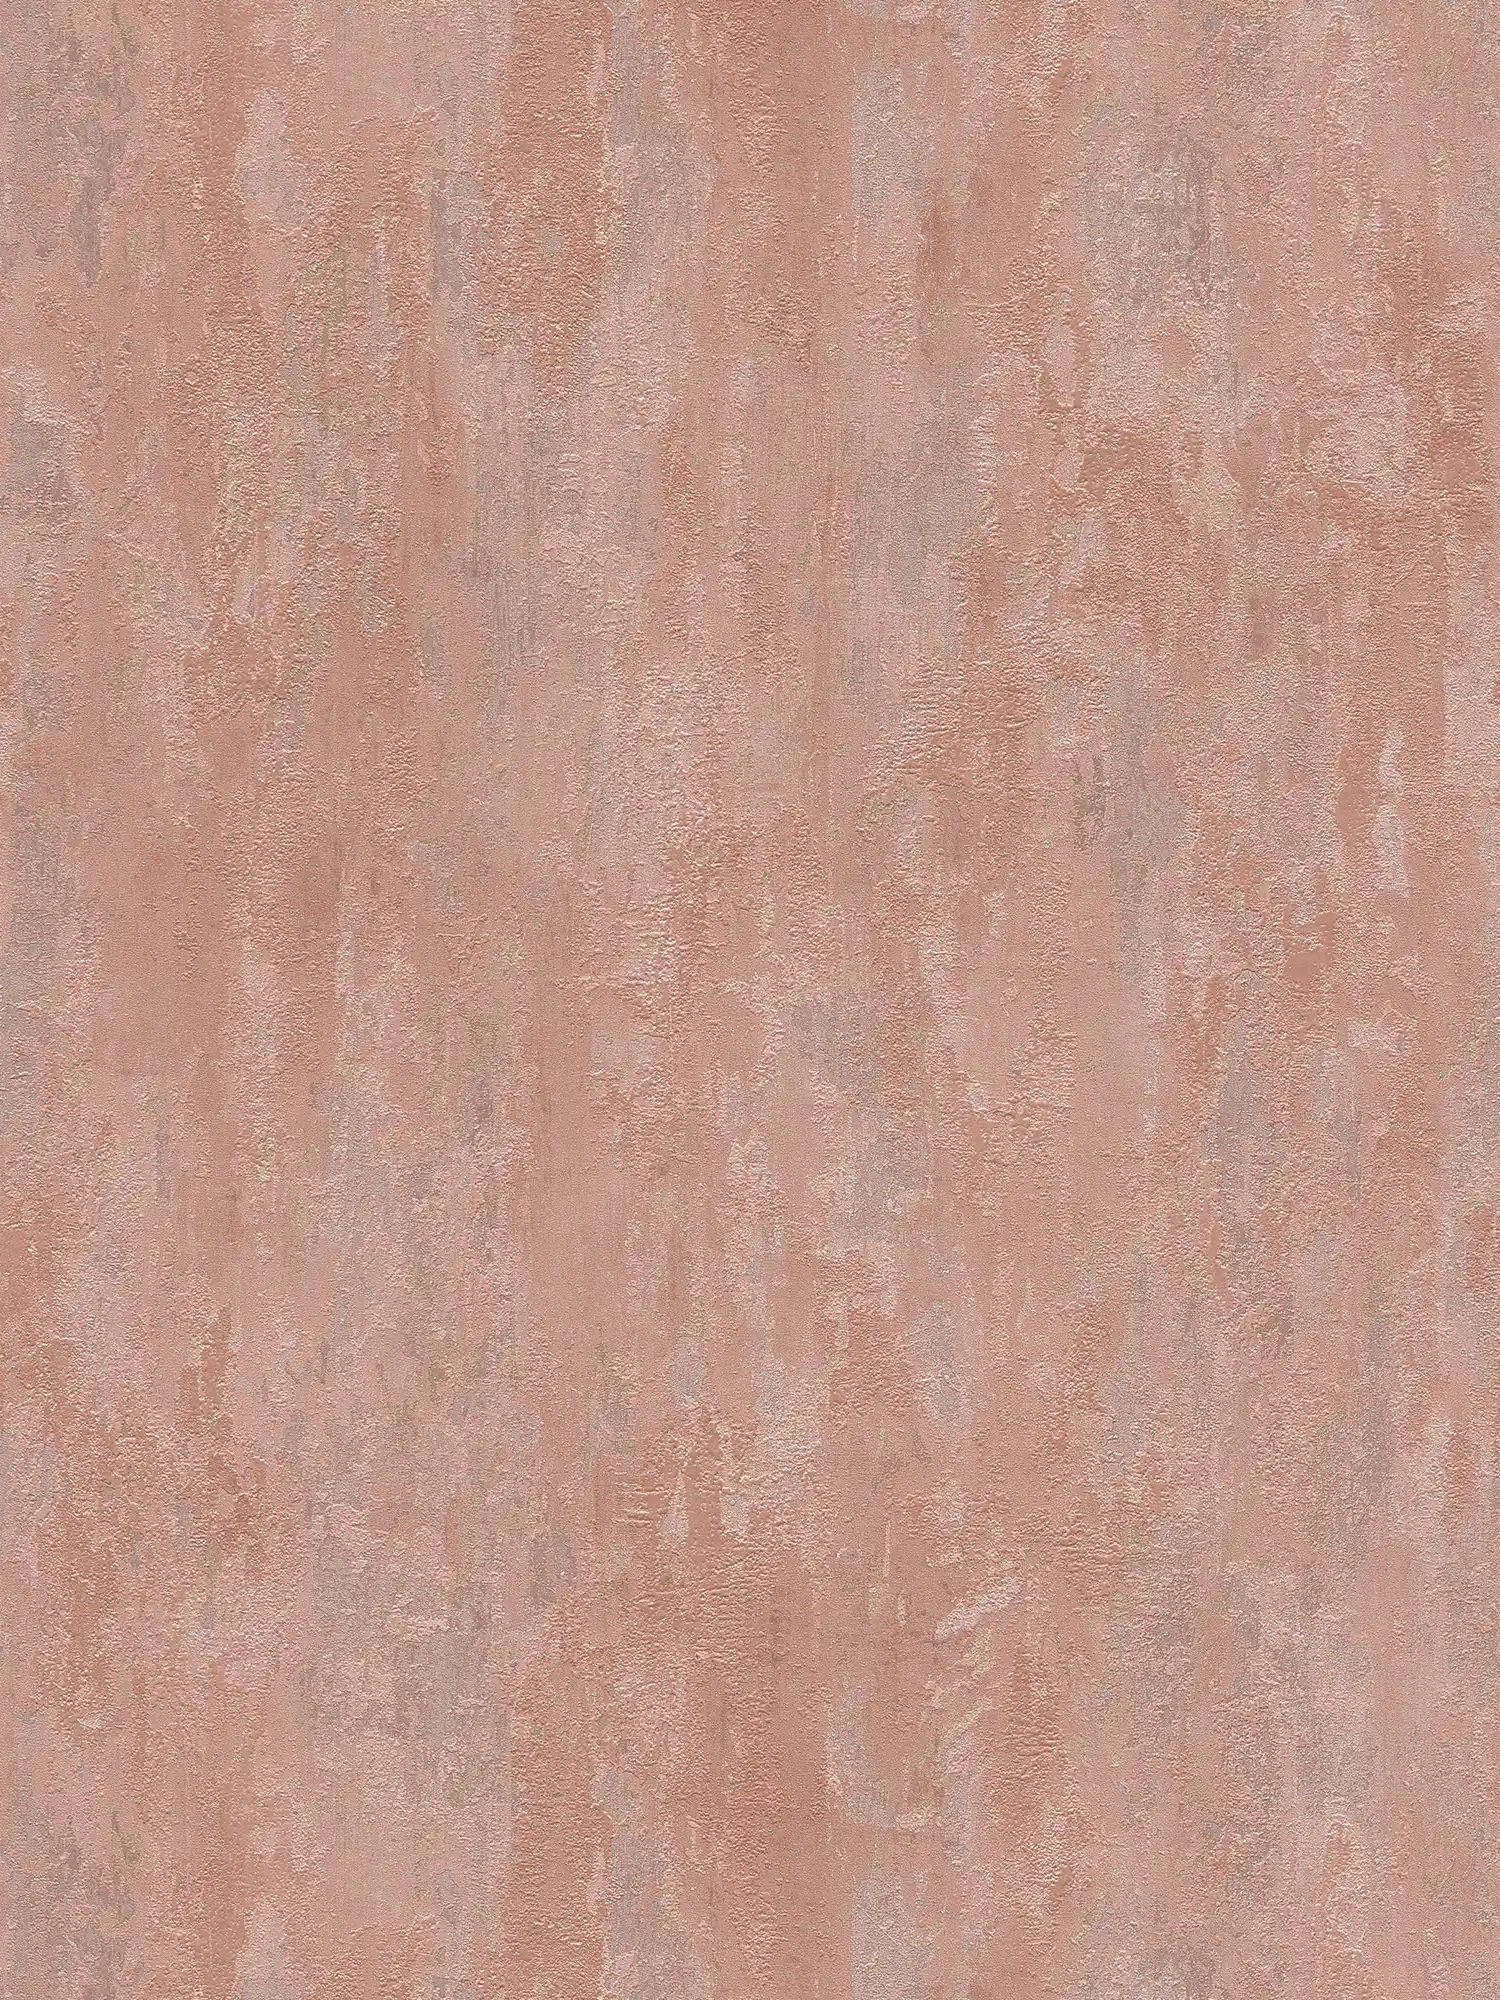         Carta da parati in stile industriale con effetto texture - metallizzata, rosa
    